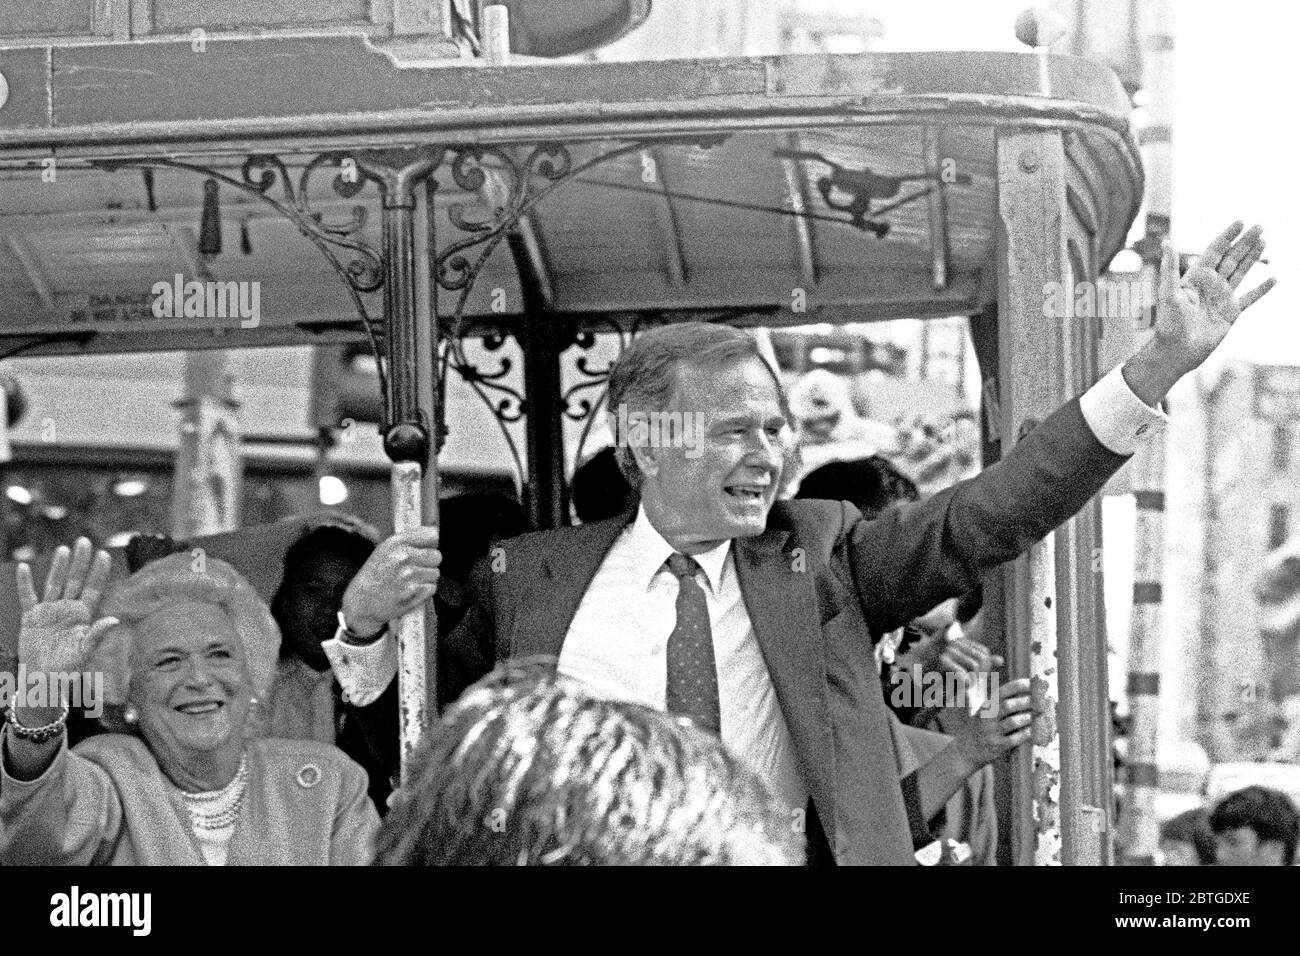 Candidato a presidente de EE.UU., George H. W. Bush haciendo campaña con su esposa, Barbara en un teleférico en San Francisco, California. 1988 Foto de stock